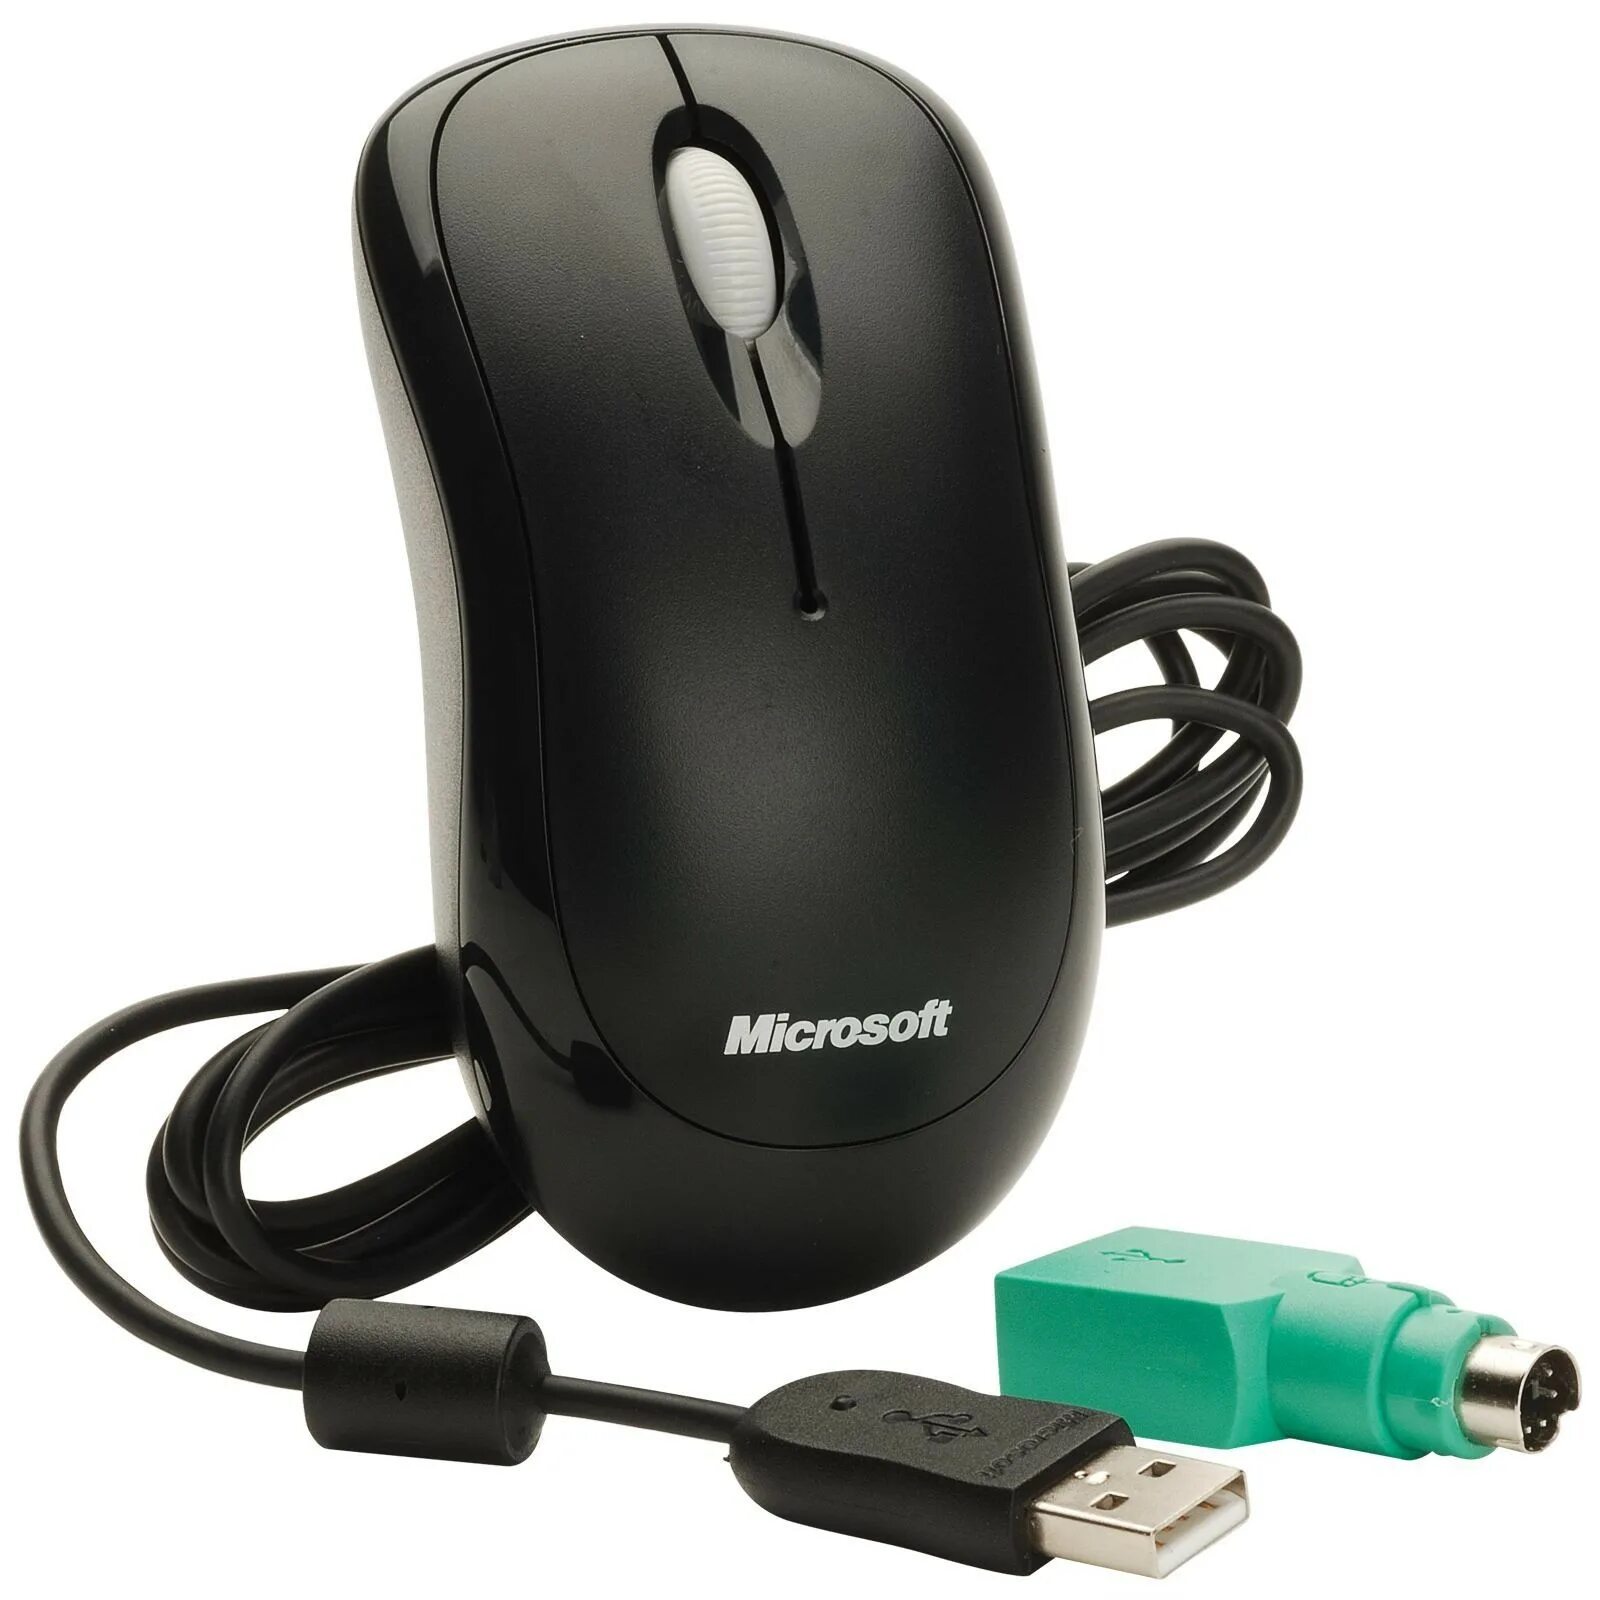 Usb мышь купить. Мышка Microsoft Basic. Microsoft Basic Optical Mouse. Microsoft USB Optical Mouse. Мышь Microsoft Basic Optical Mouse ps2.